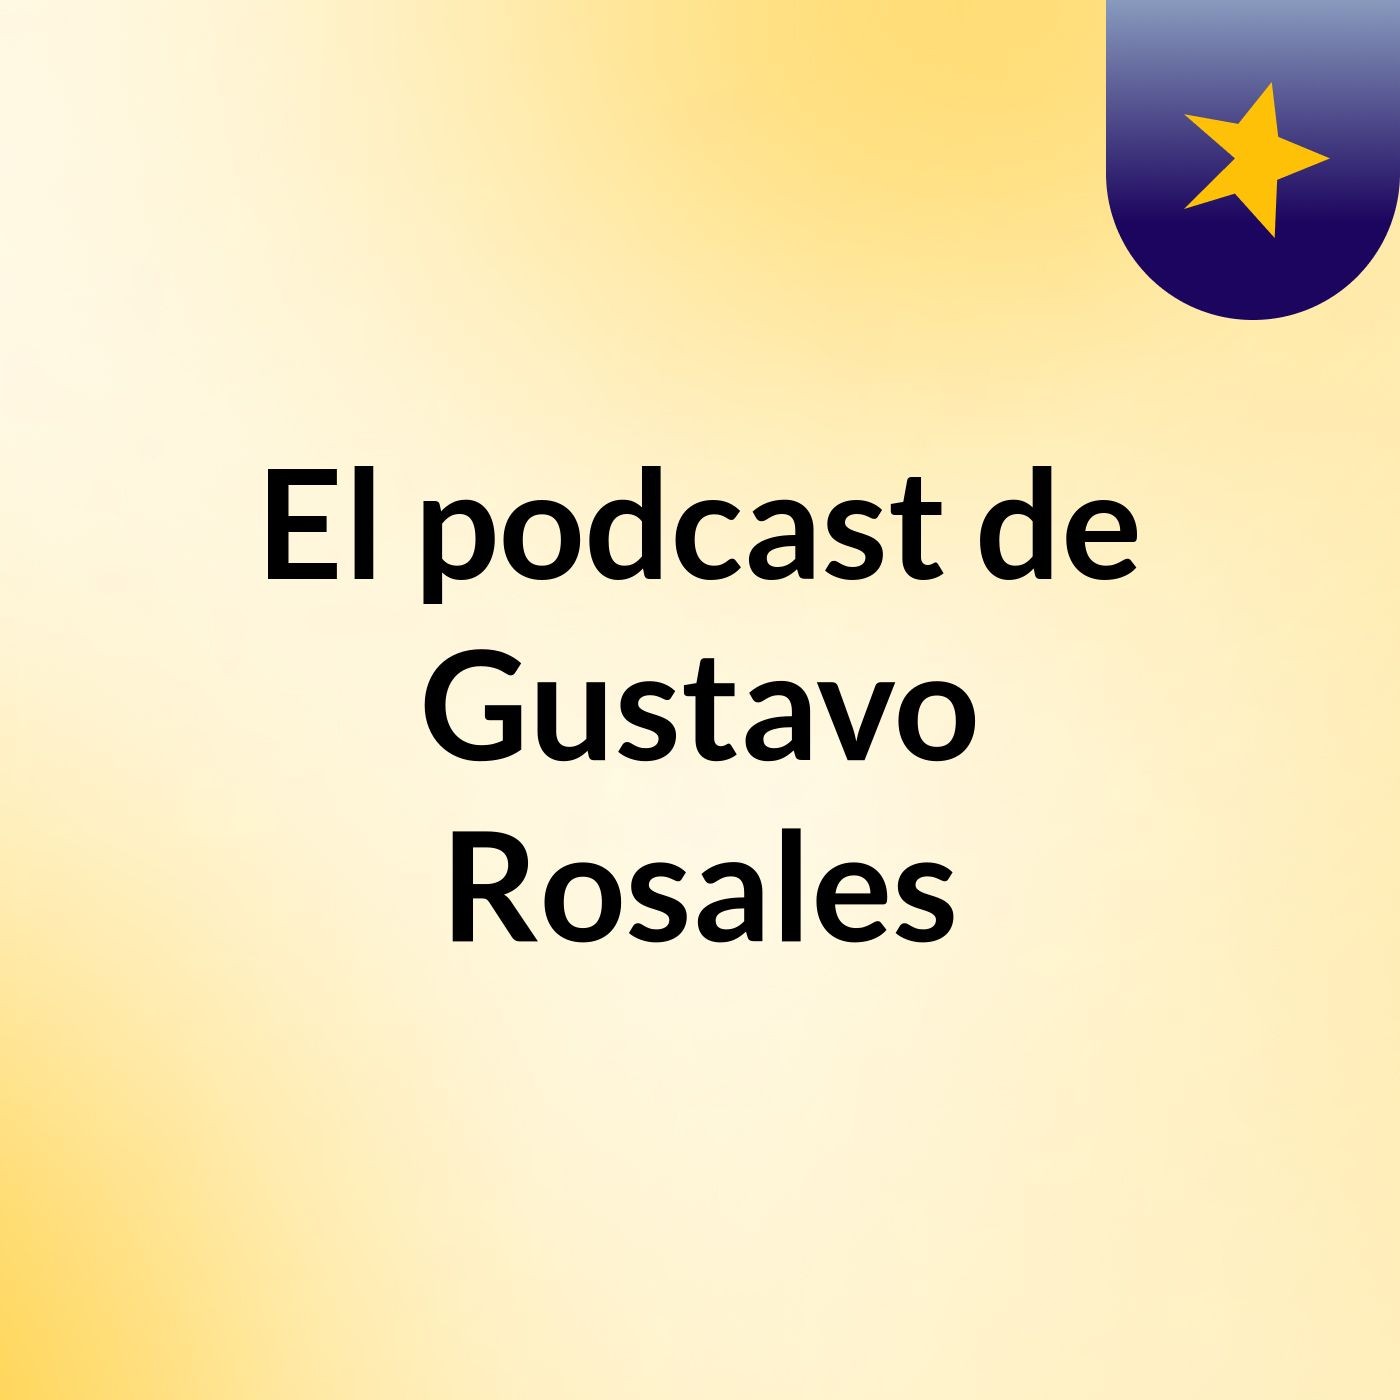 Episodio 7 - El podcast de Gustavo Rosales